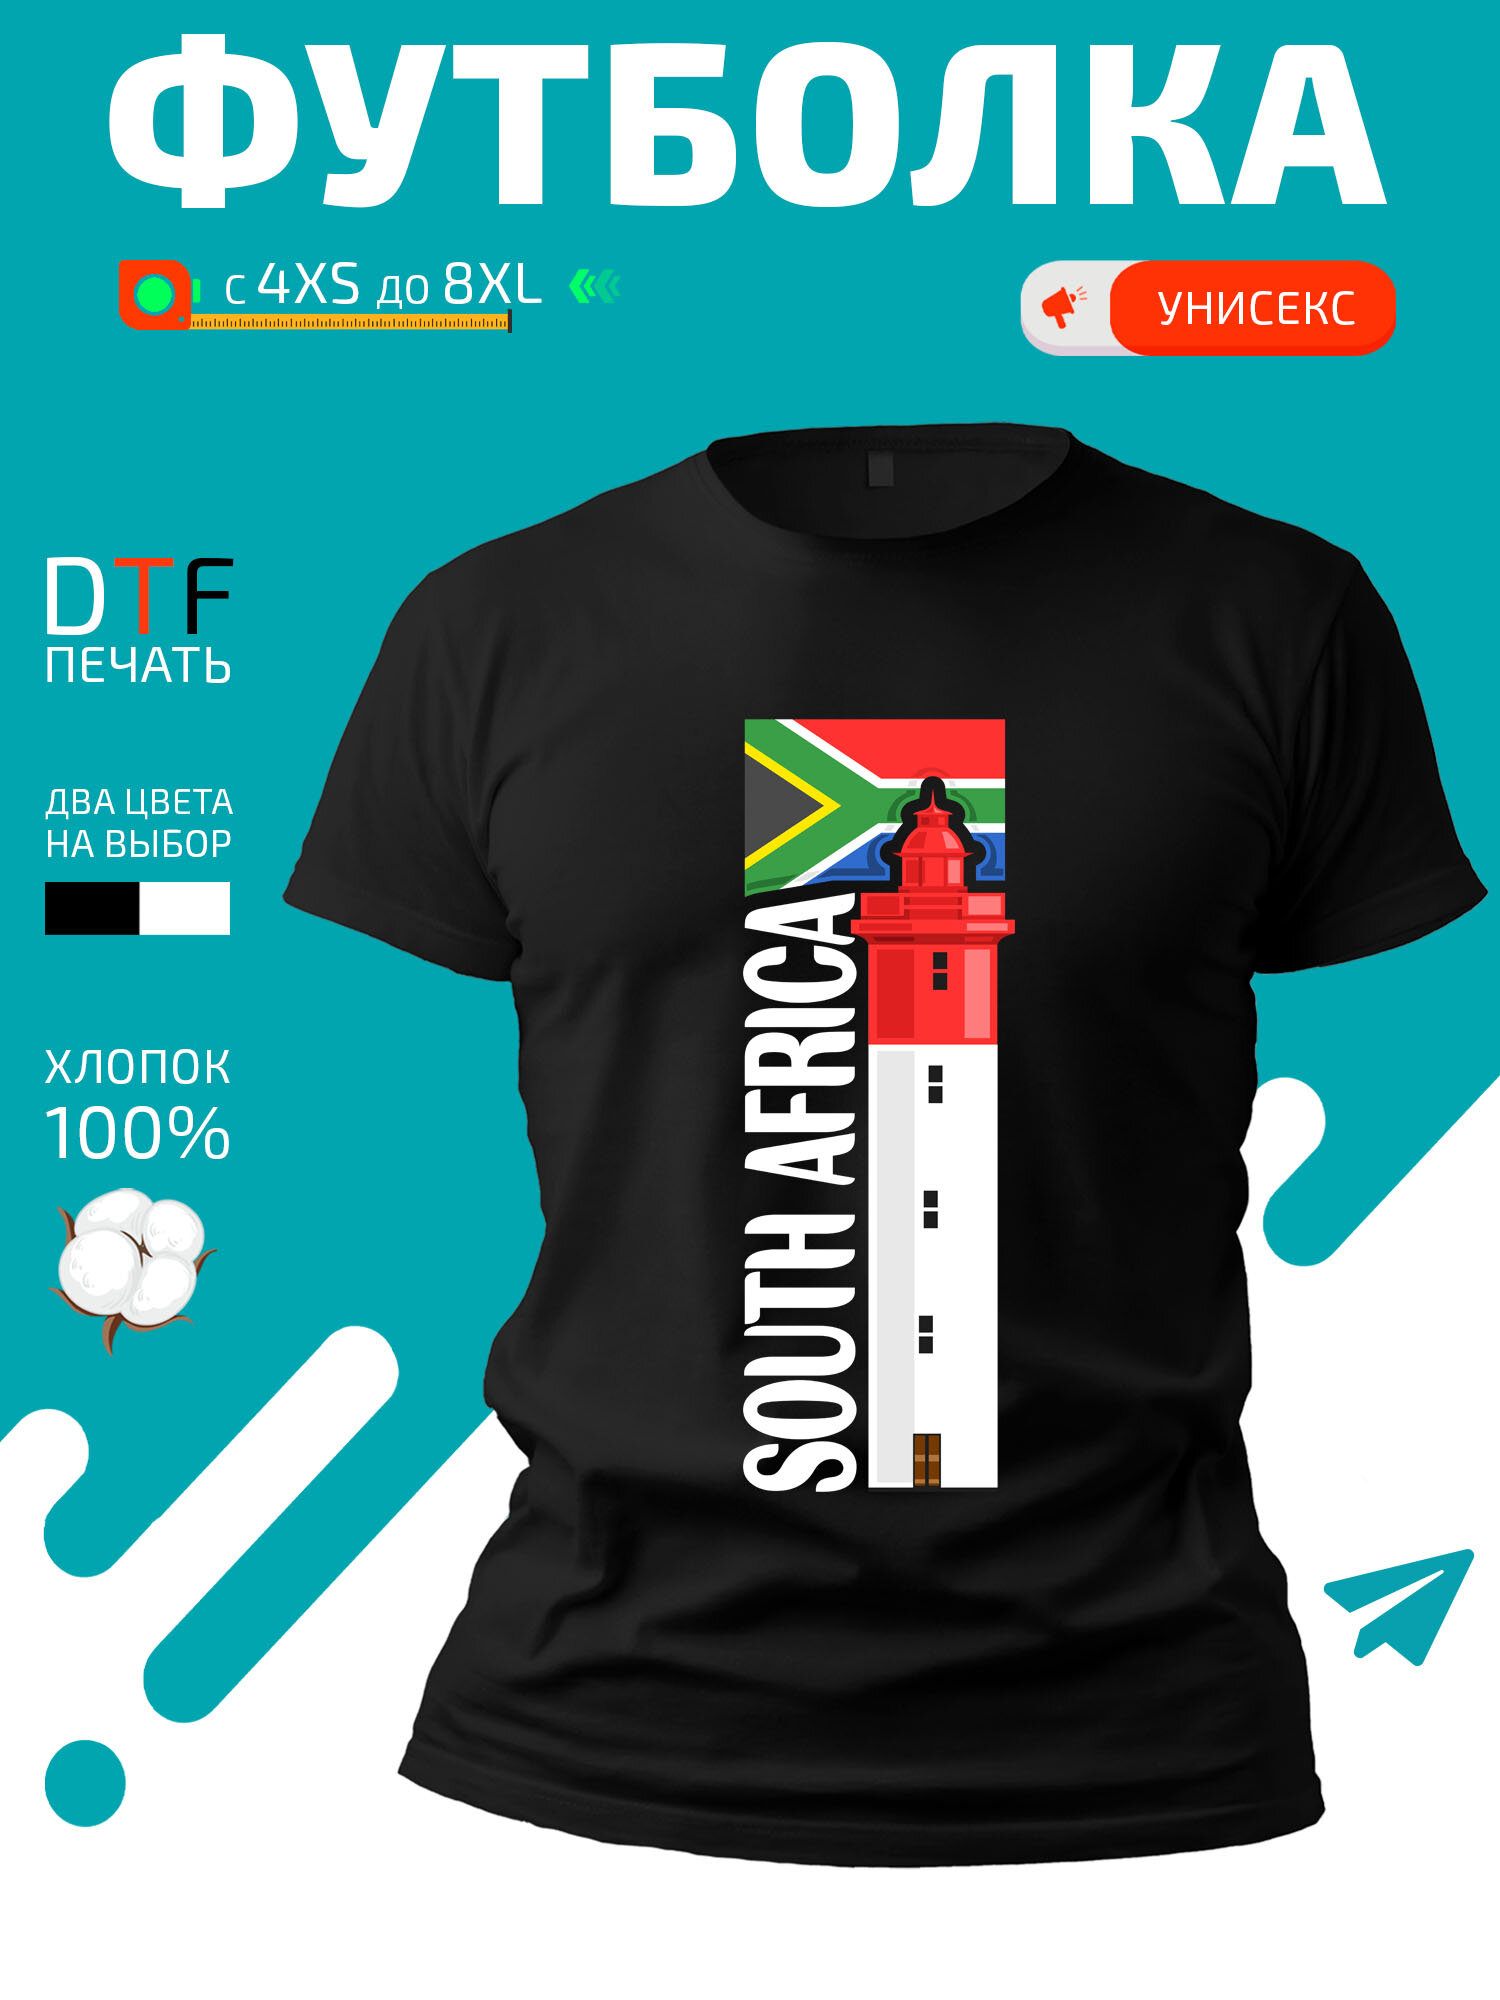 Футболка South Africa флаг Южной Африки и известная достопримечательность